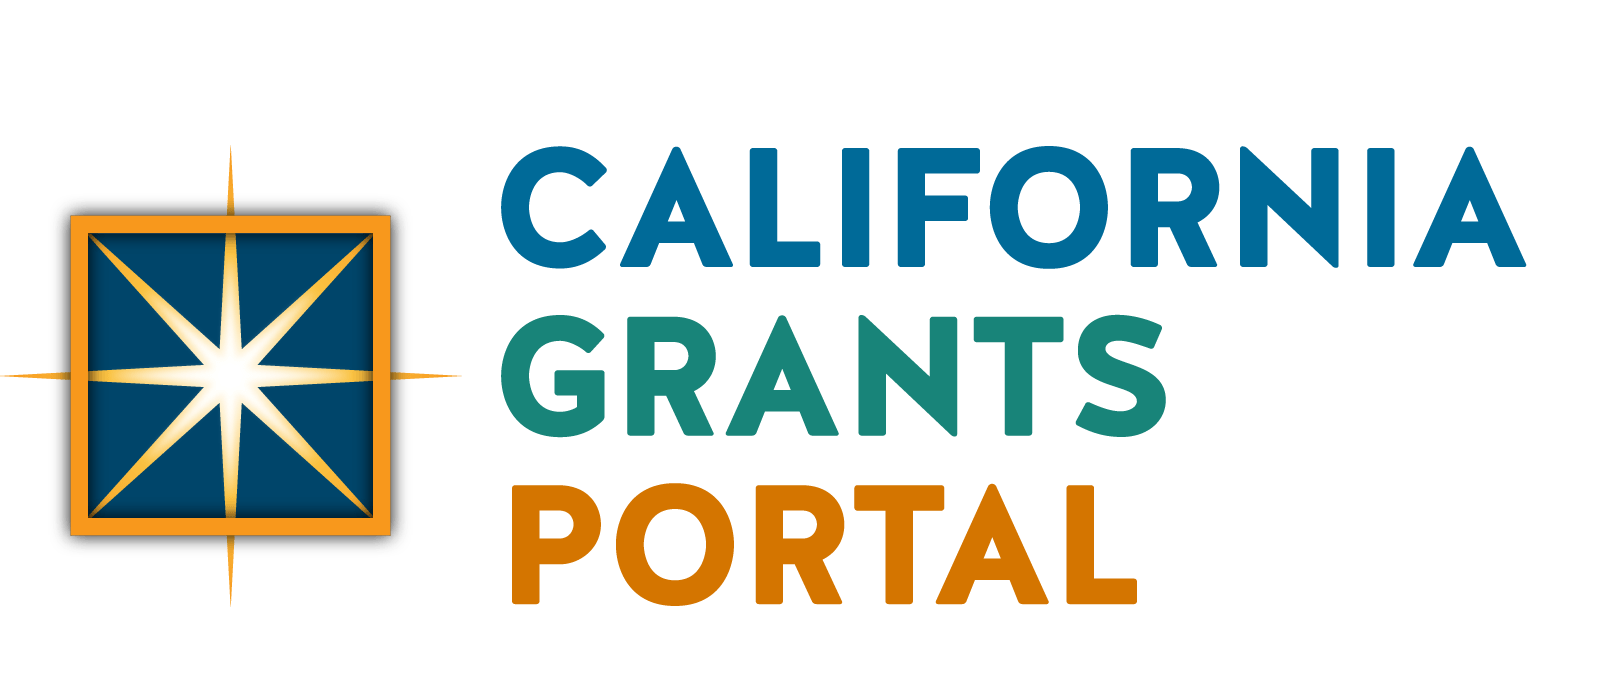 California Grants Portal